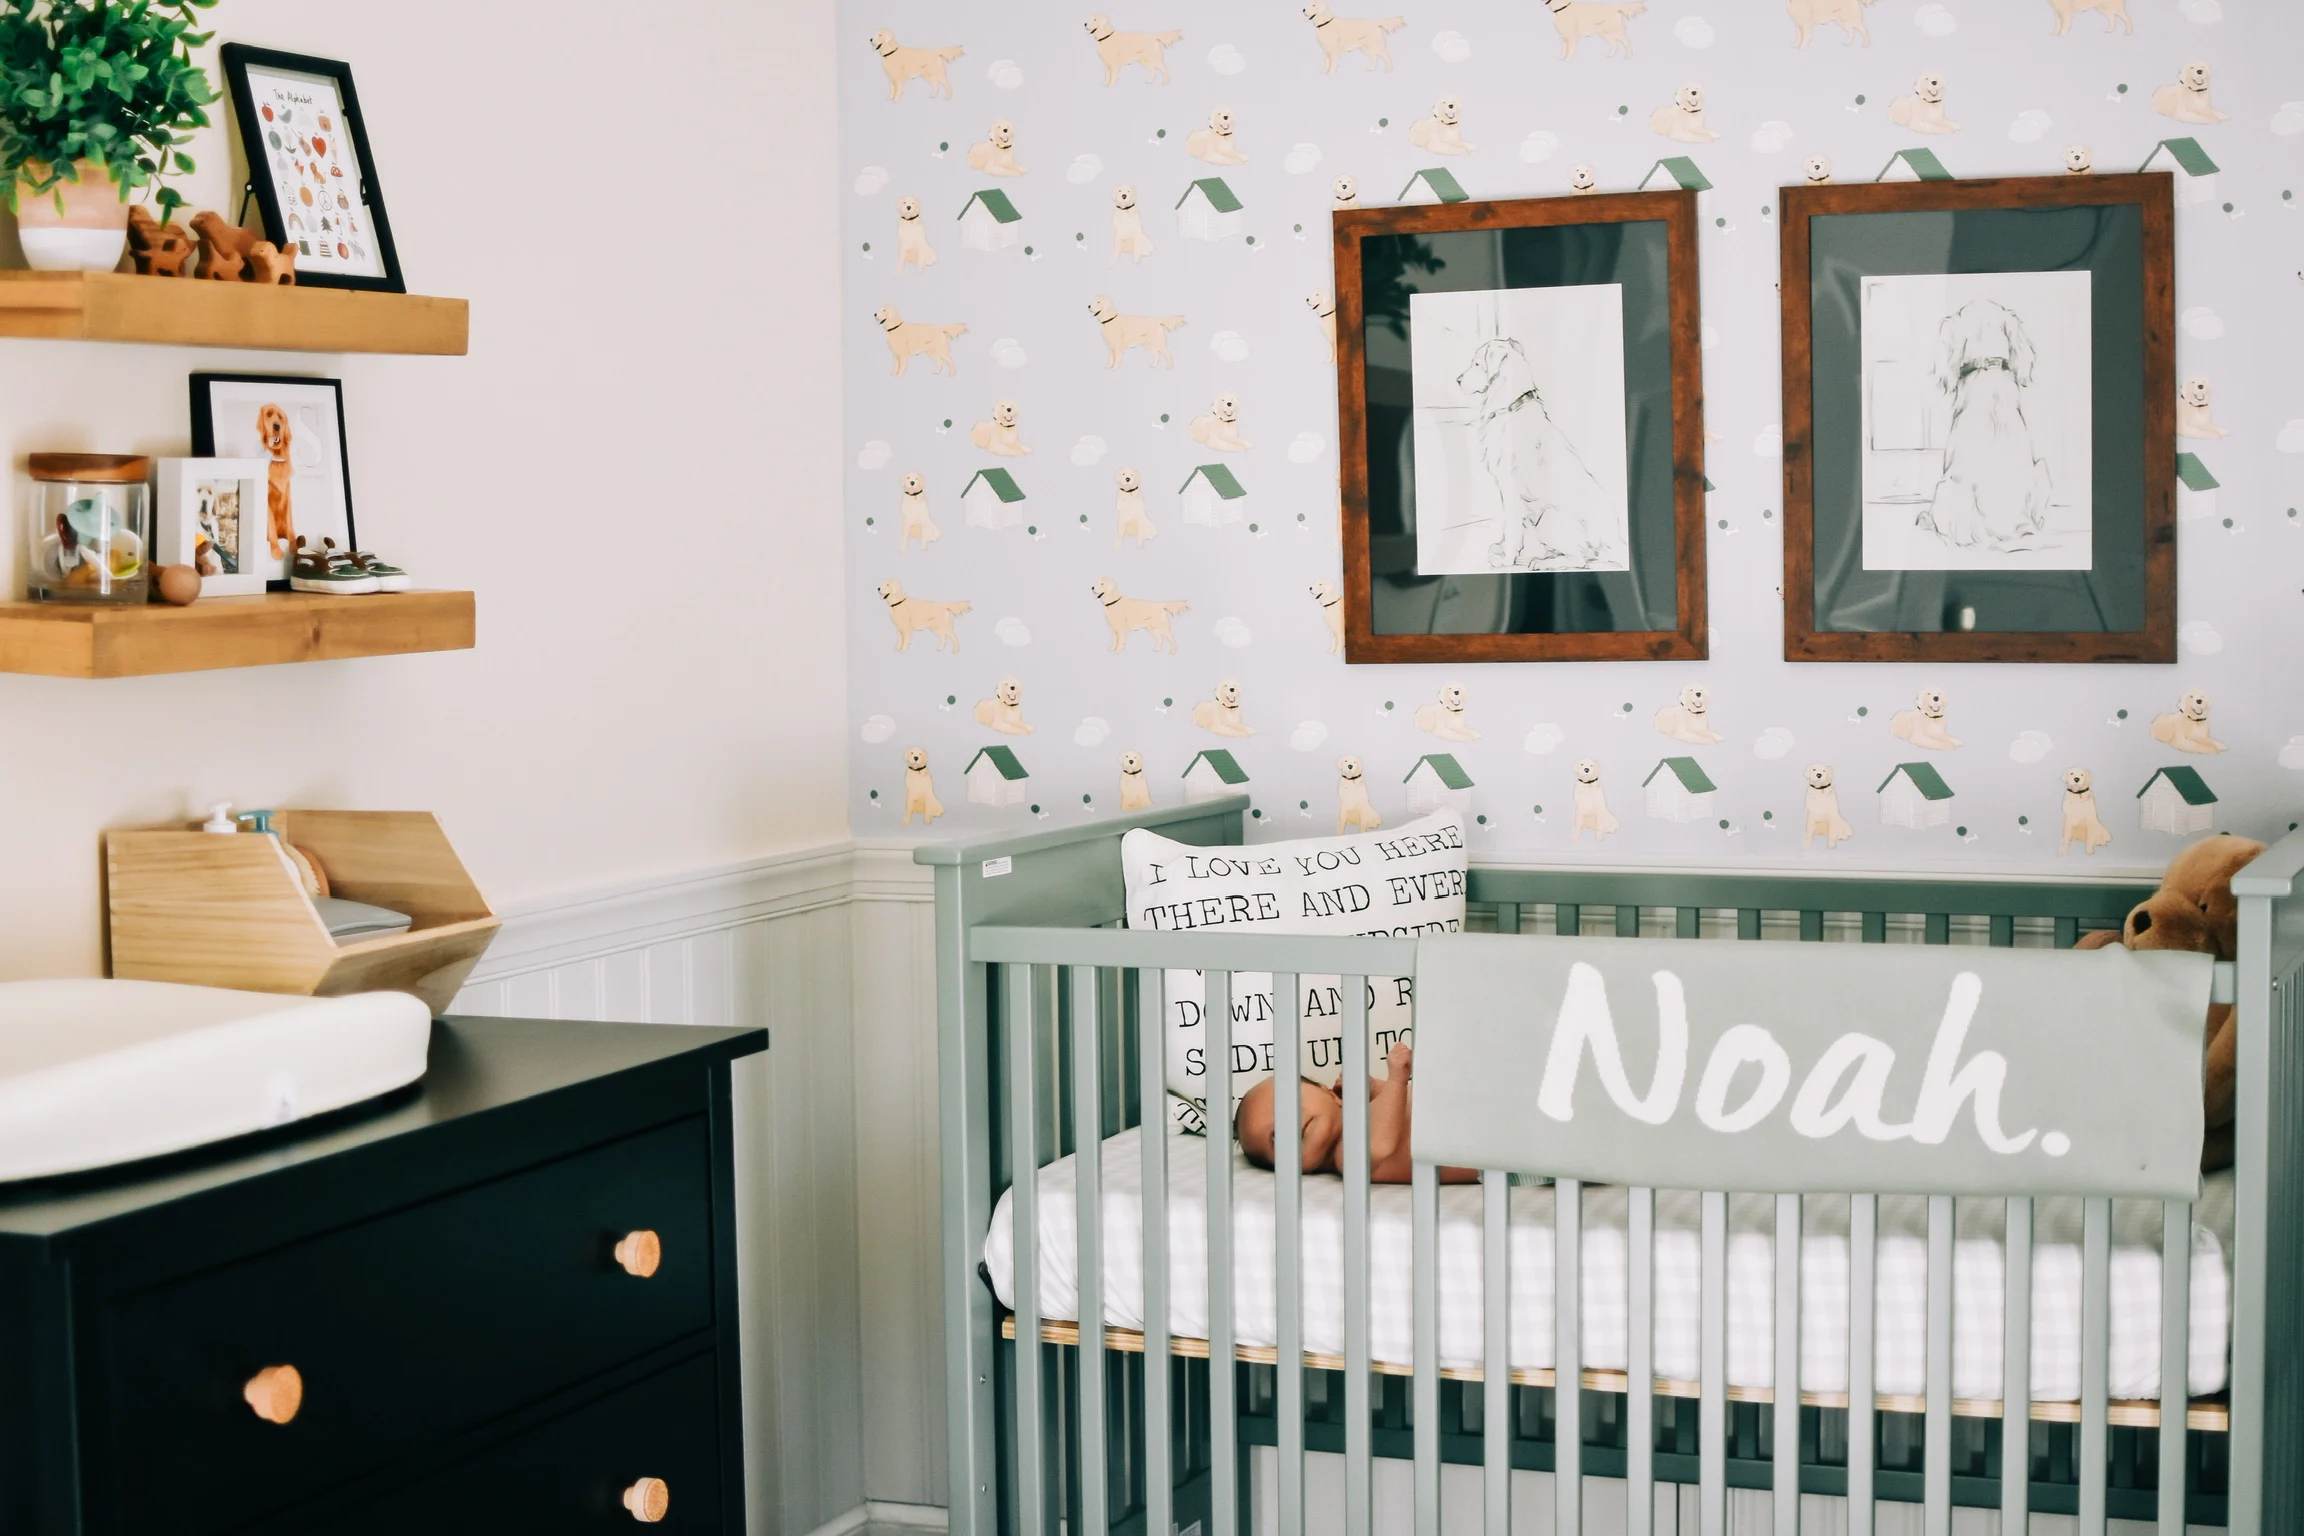 Boy Nursery with Golden Retriever Wallpaper and Art